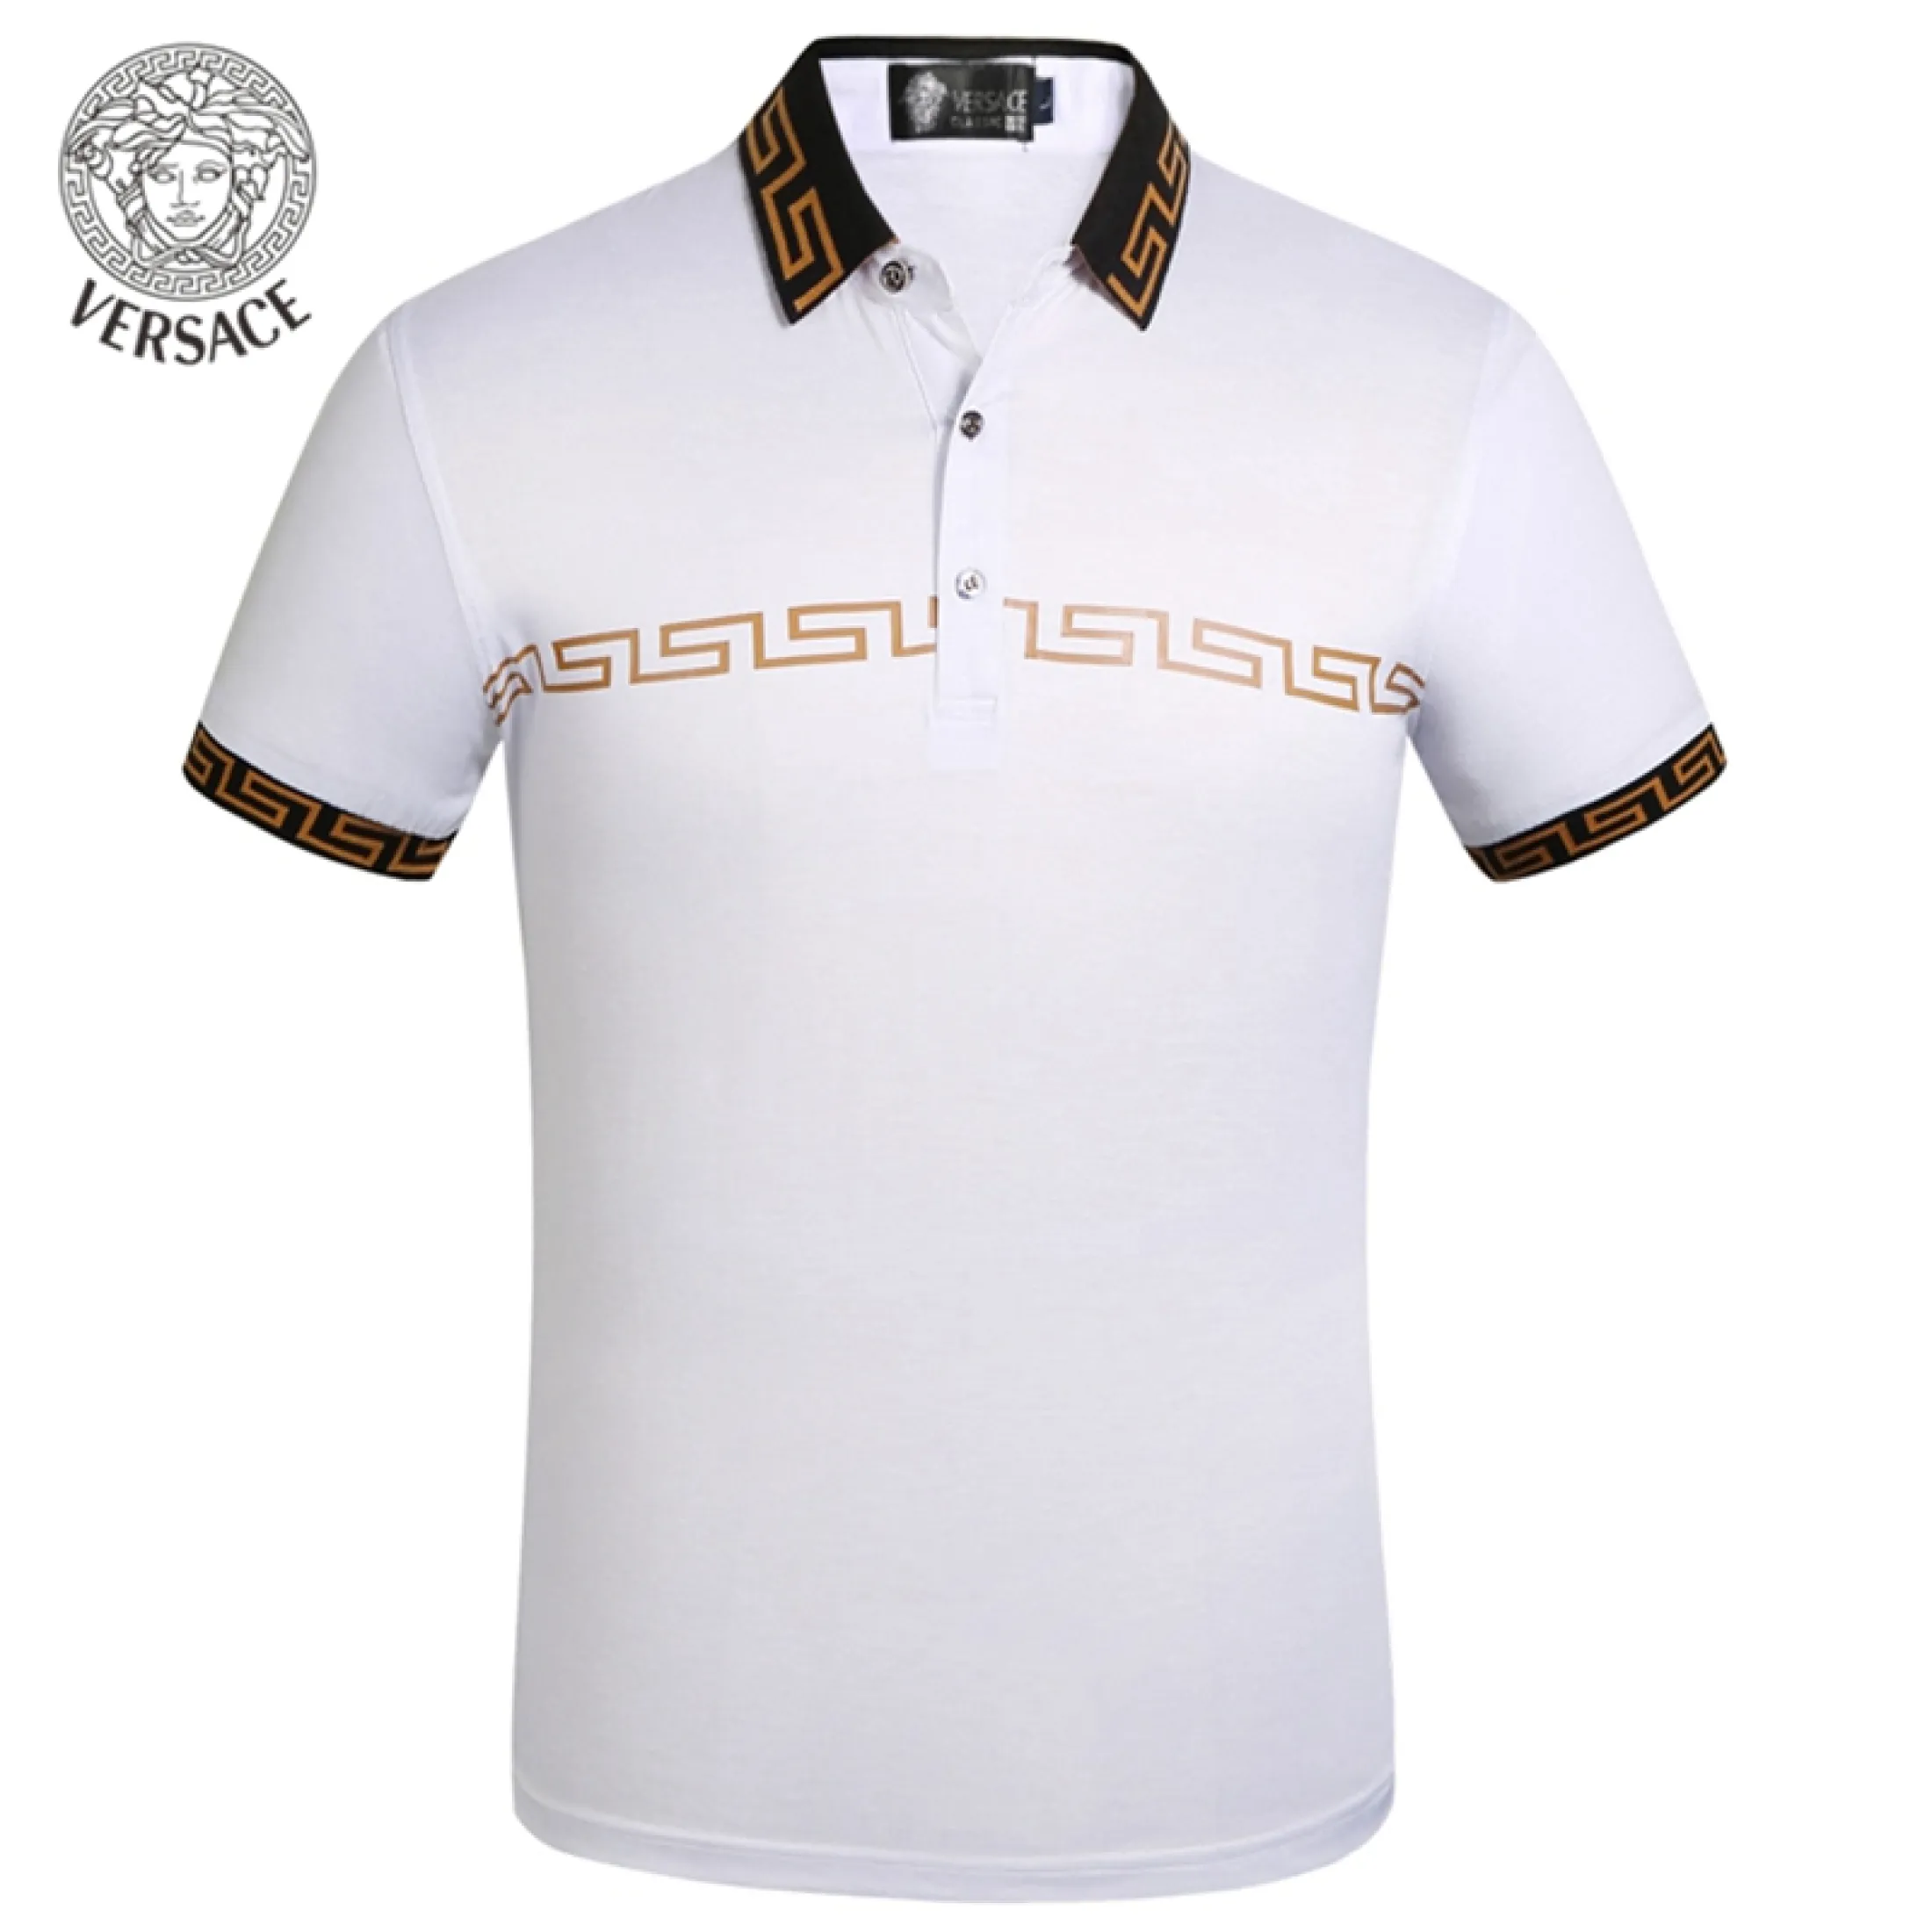 versace golf shirt